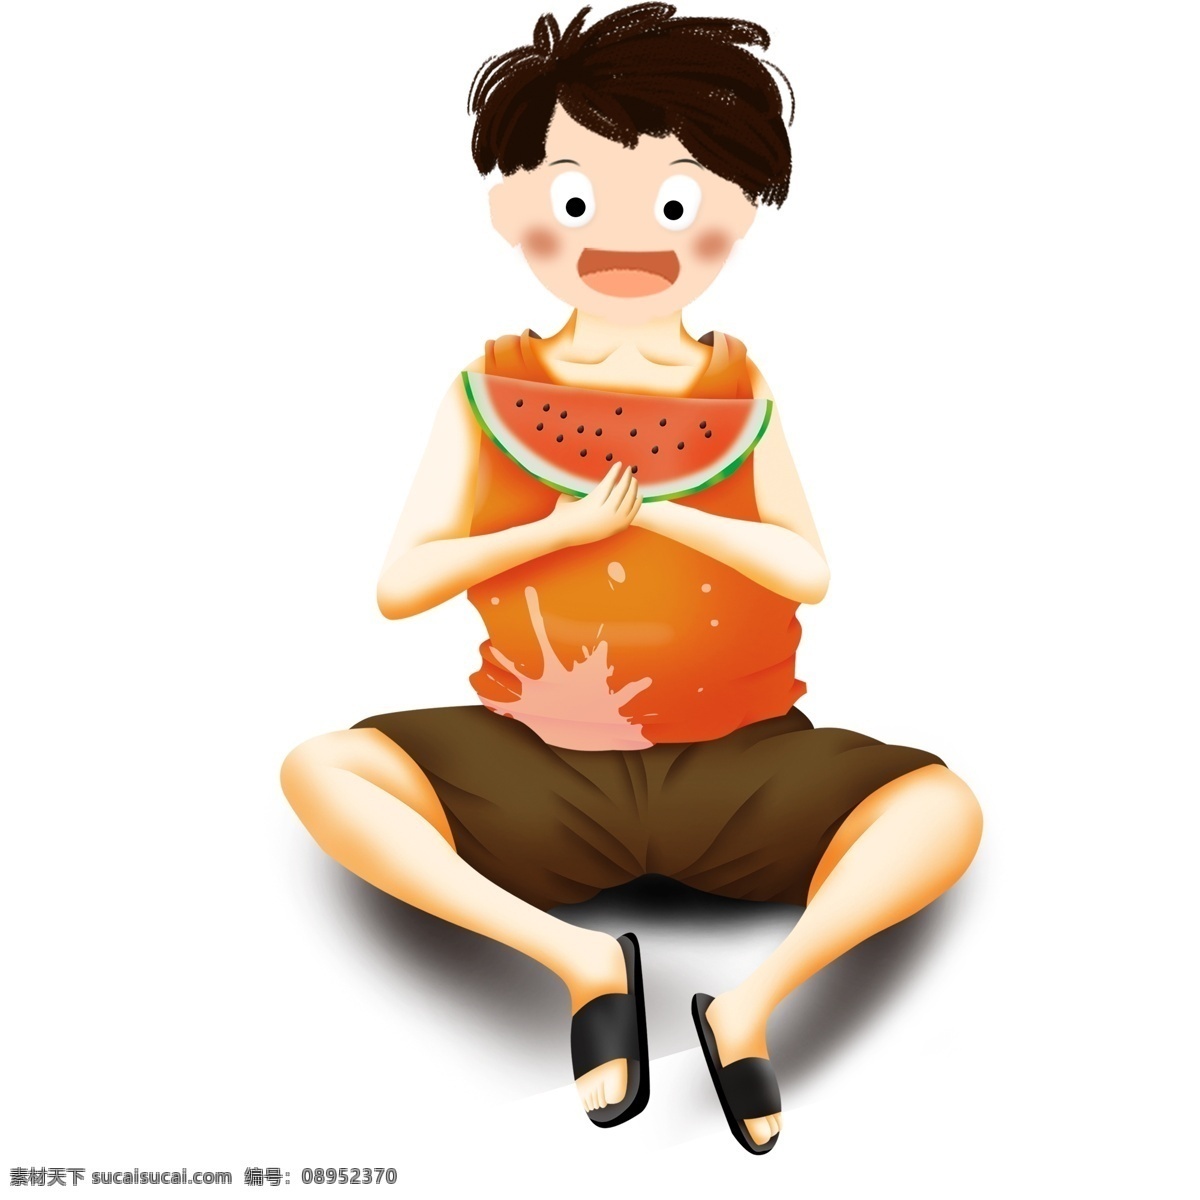 清凉 夏季 吃 西瓜 男孩子 卡通 清新 夏日 插画 男孩 吃西瓜